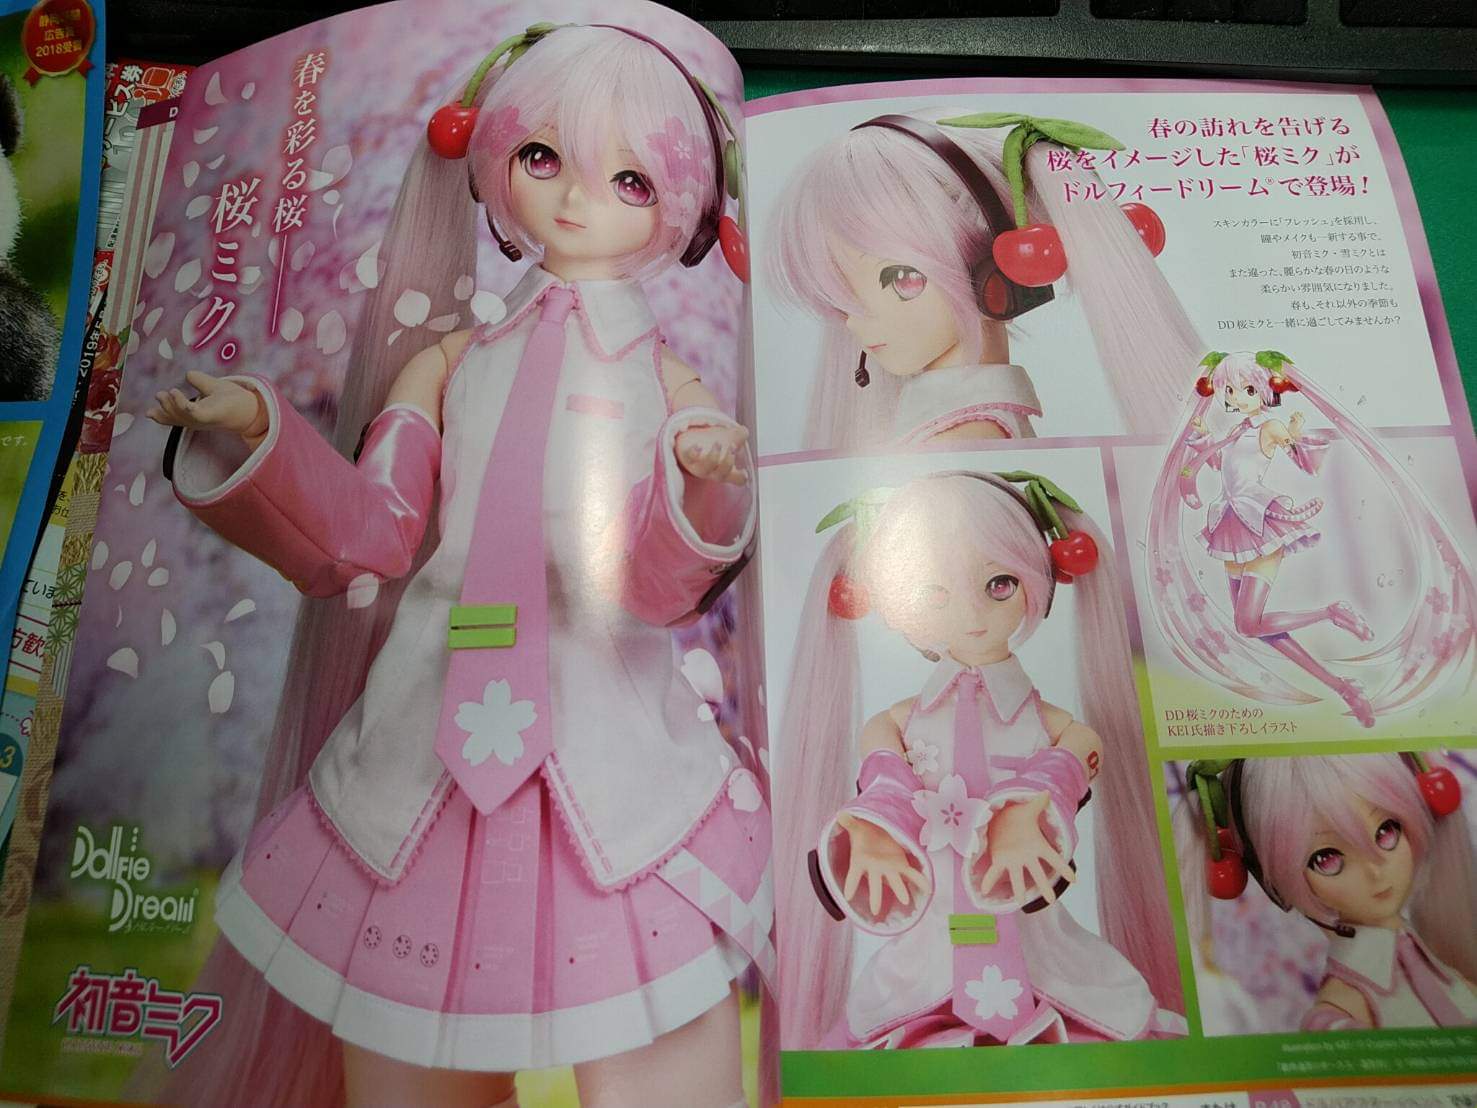  [Dollfie Dream] Vocaloid Sakura Miku  - Page 4 Fb_img70